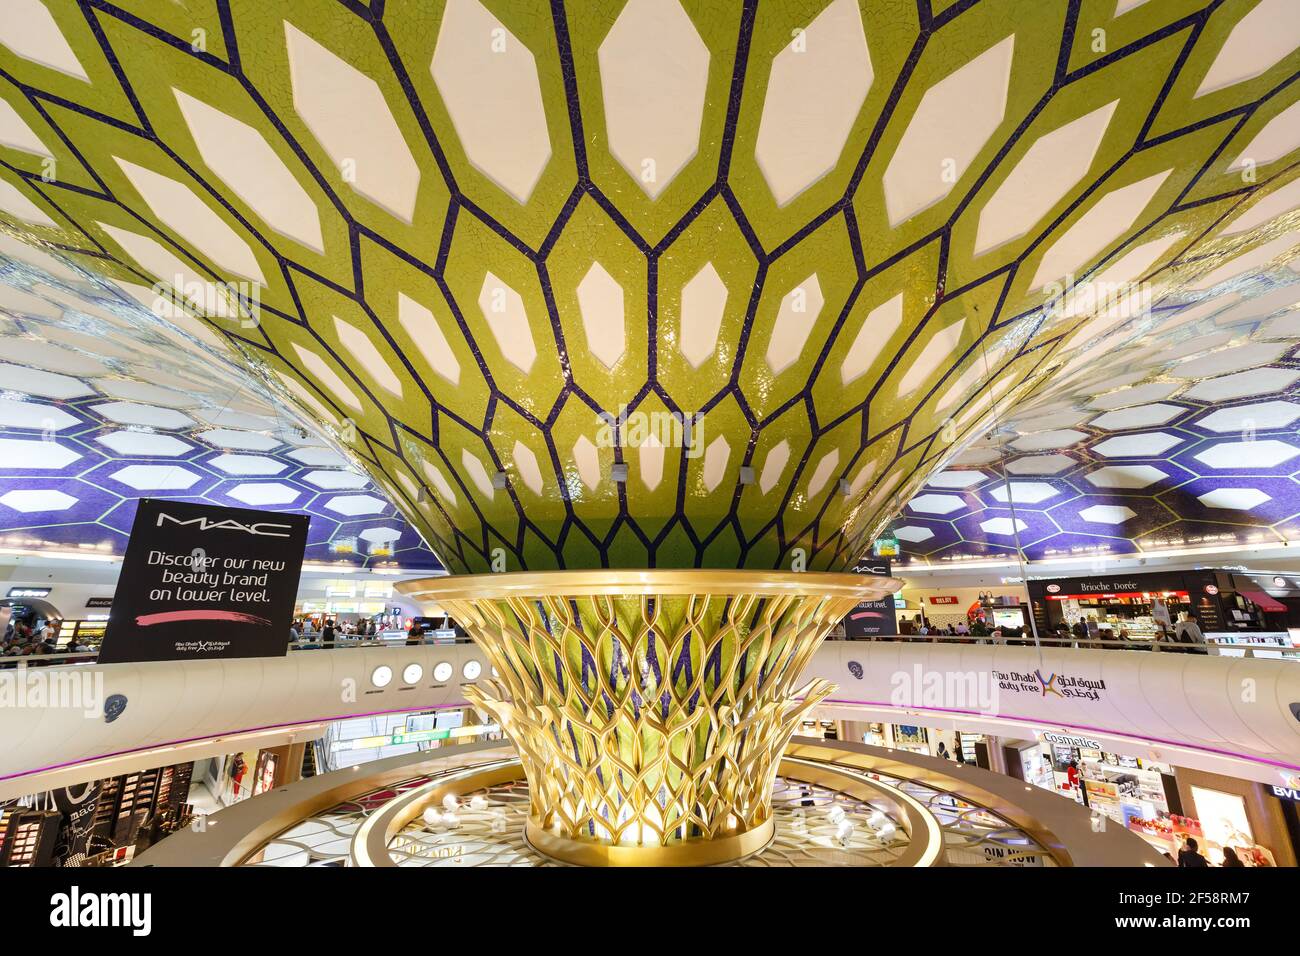 Abu Dhabi, United Arab Emirates - February 22, 2018: Terminal at Abu Dhabi Airport (AUH) in the United Arab Emirates. Stock Photo